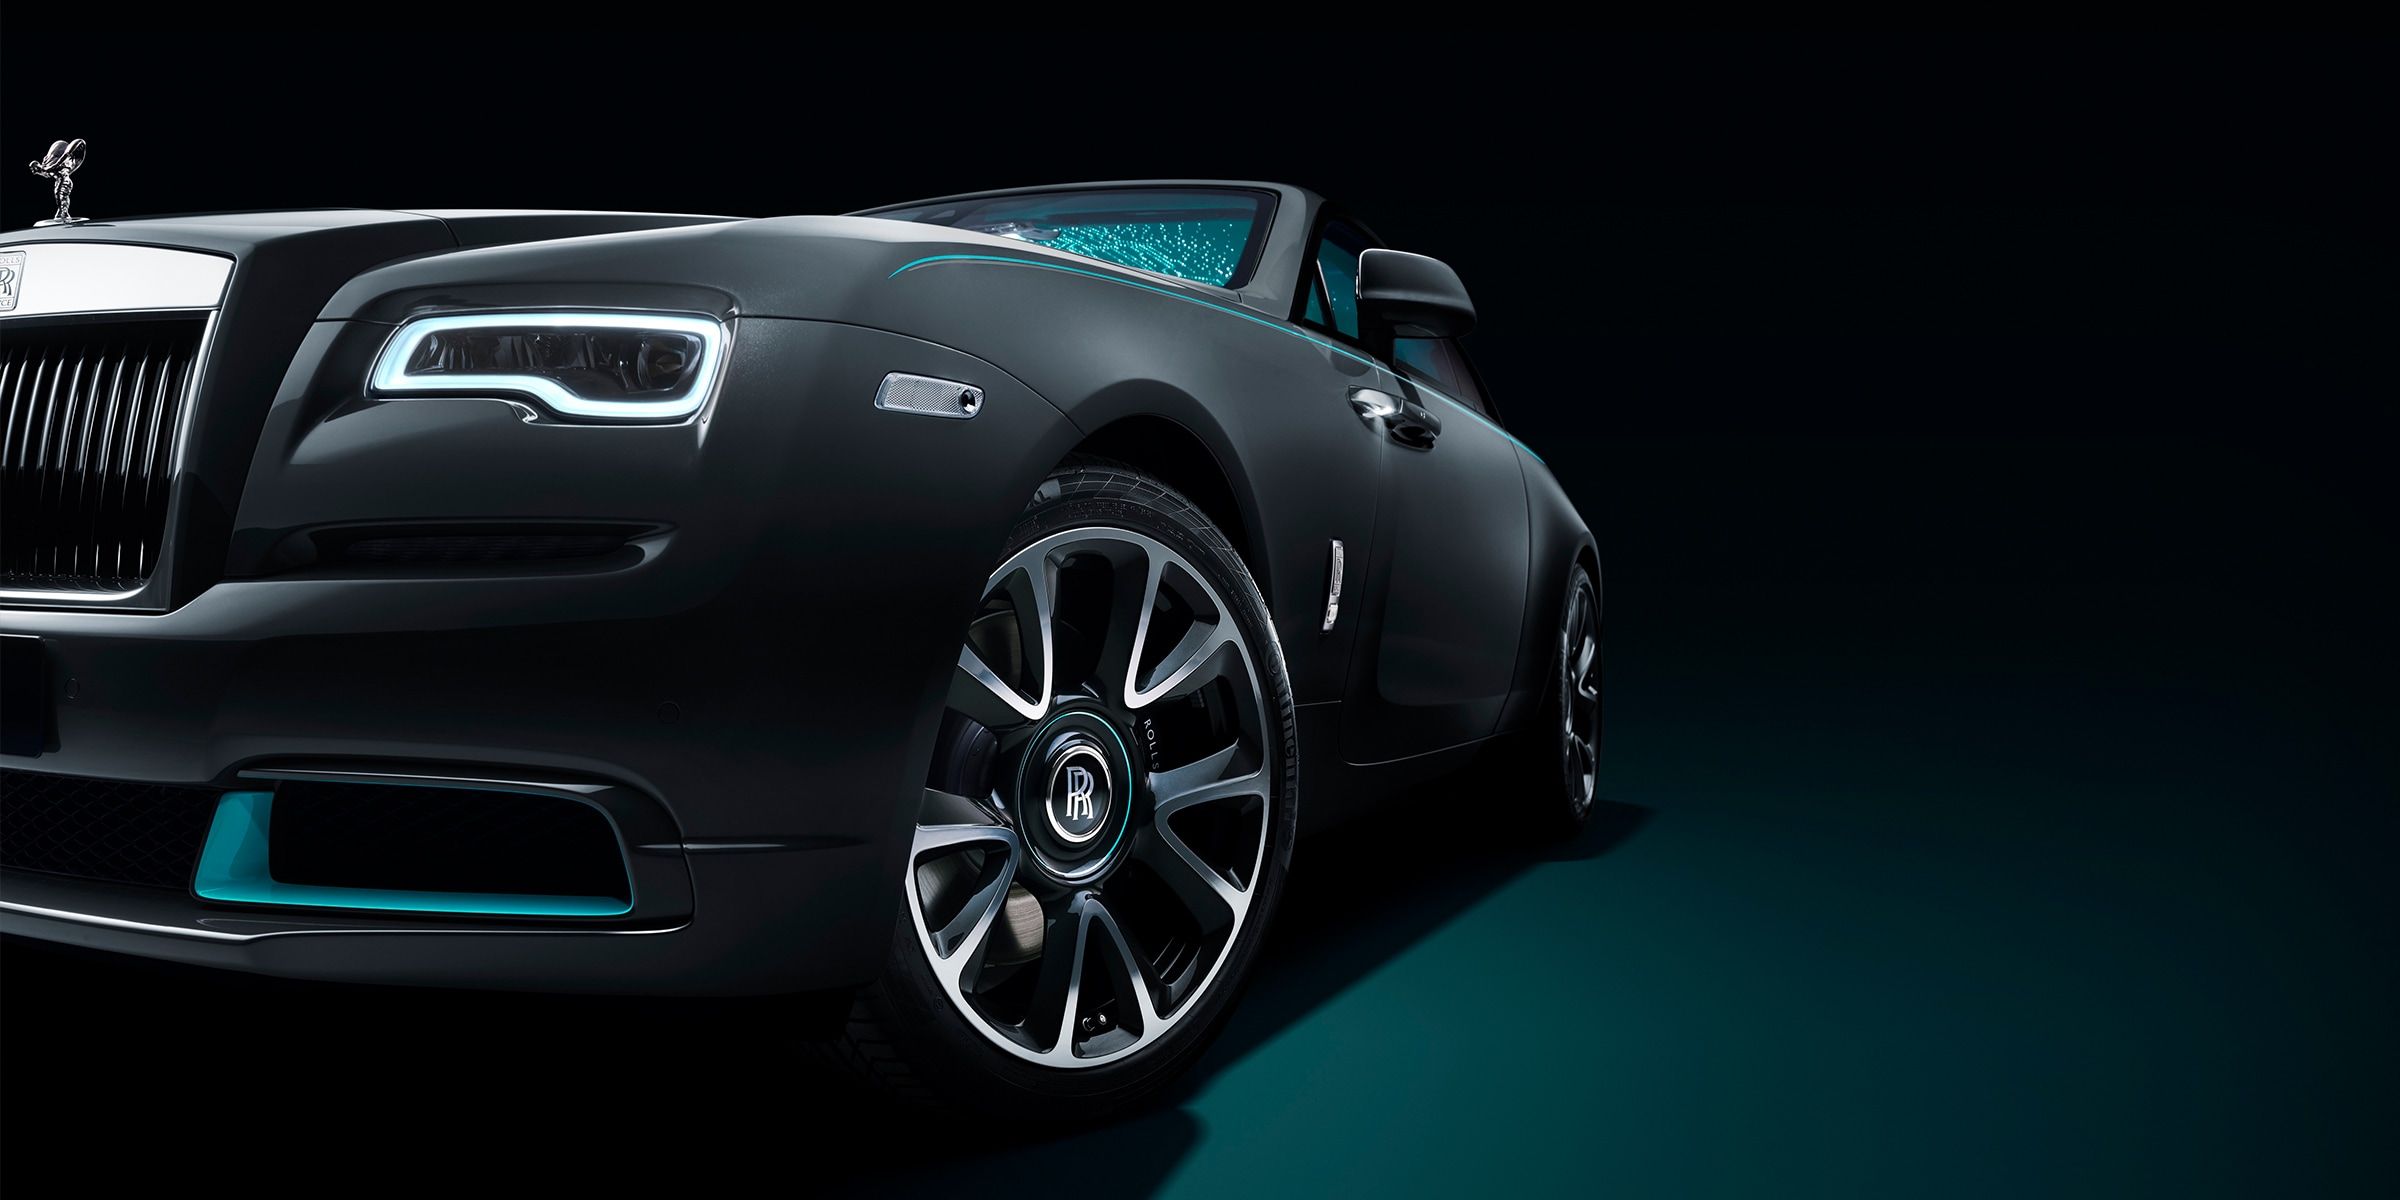 An Image Of A Black Rolls Royce Wraith